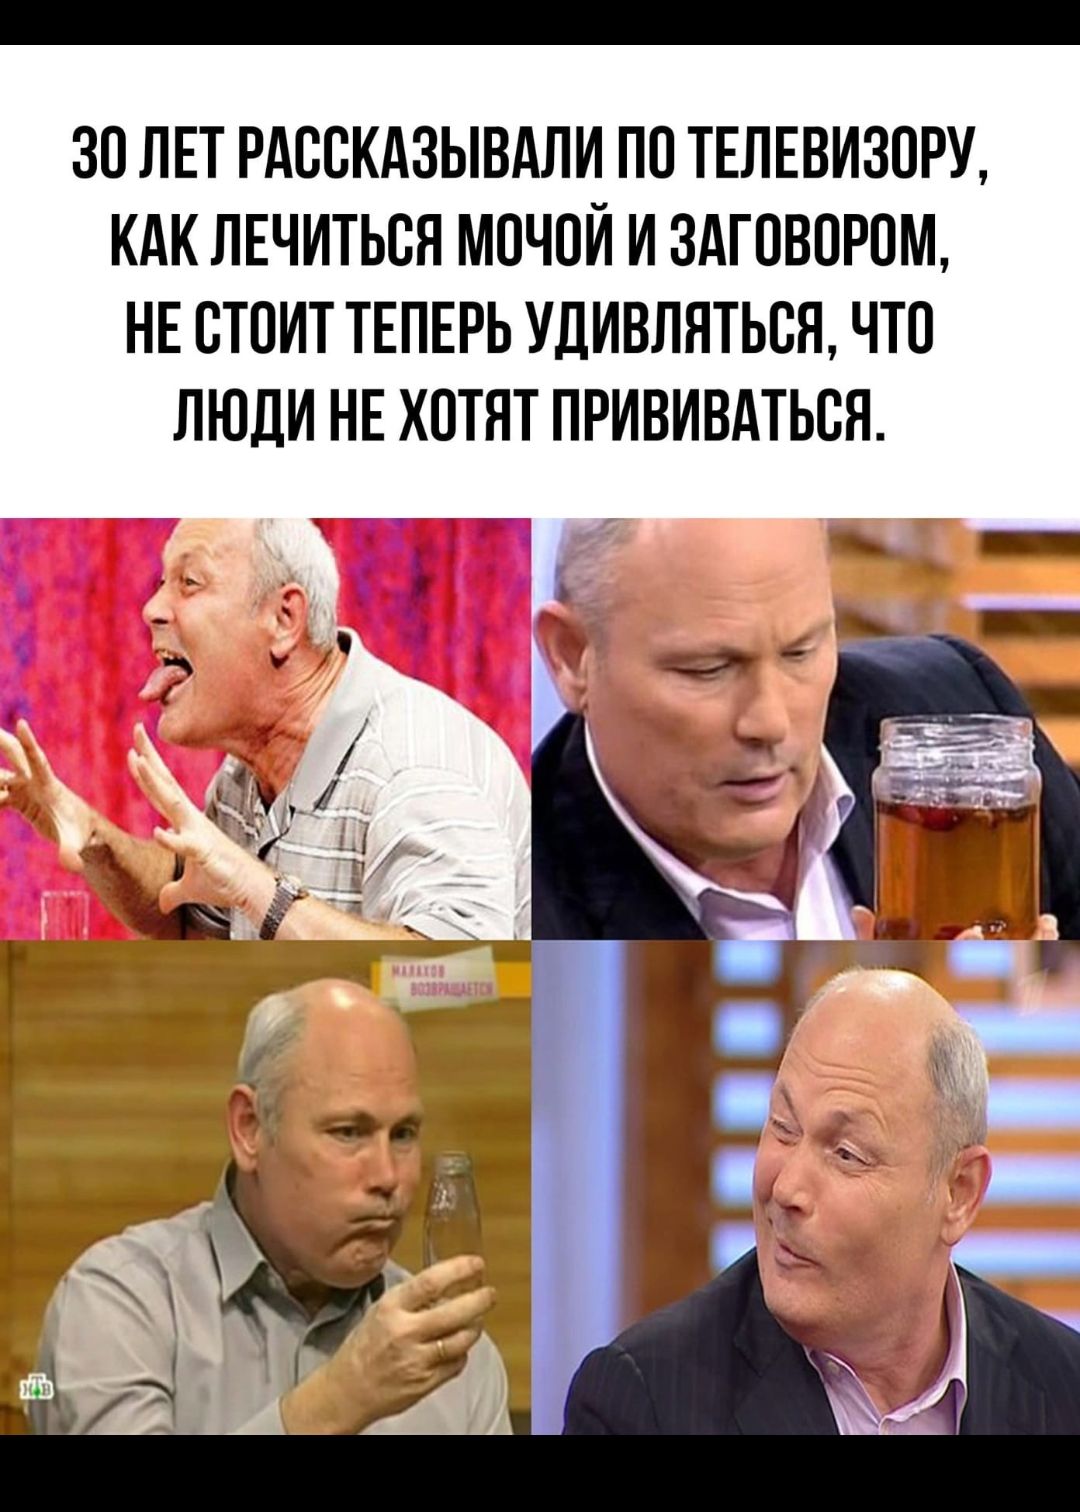 Геннадий Малахов уринотерапия